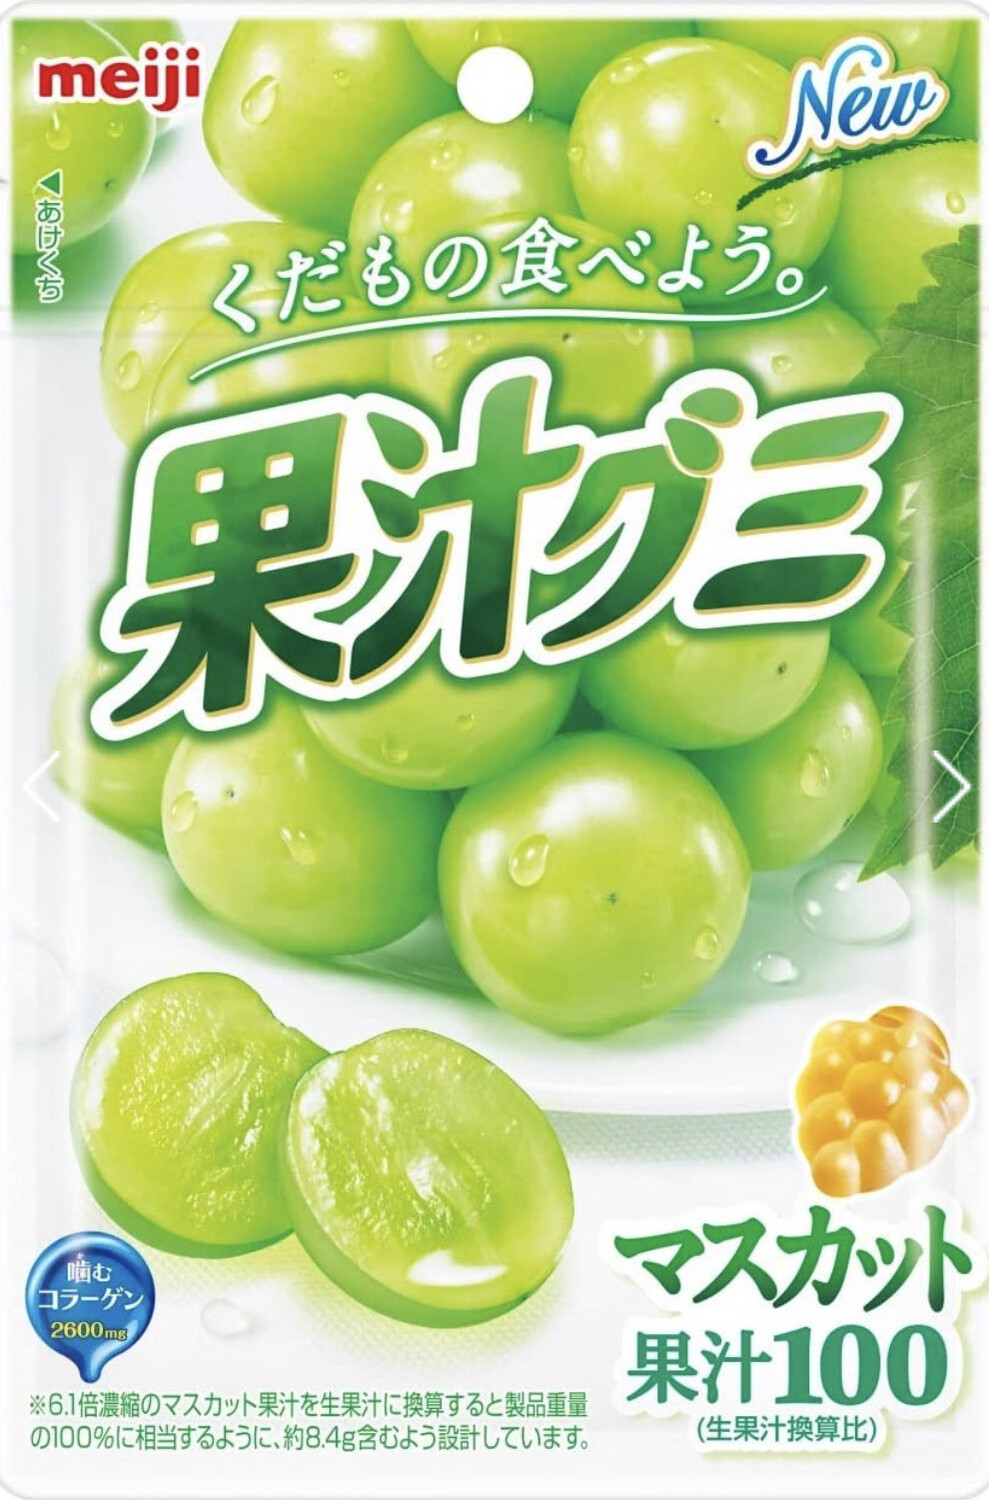 Meiji коллагеновые конфеты